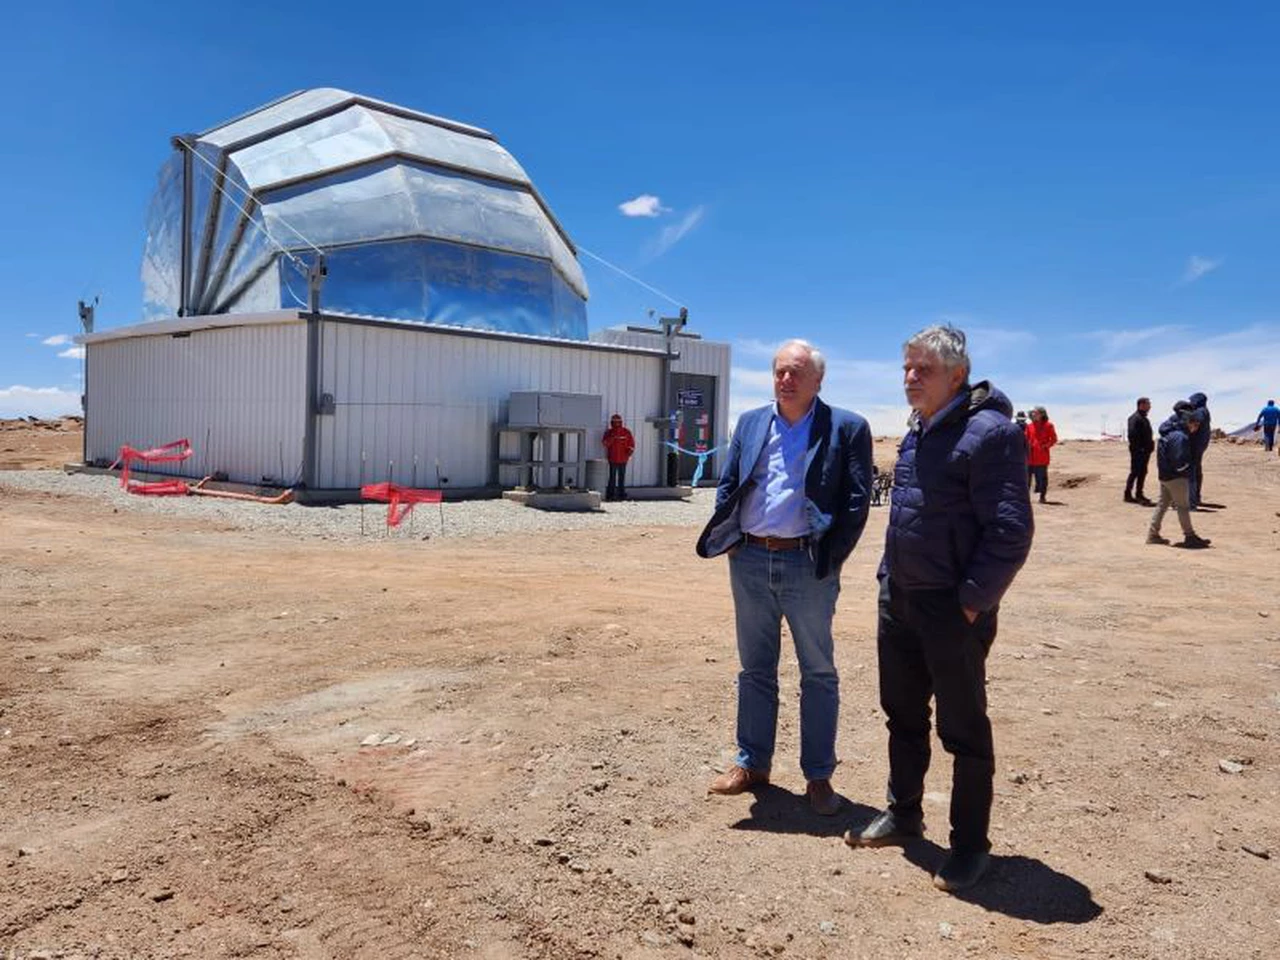 Buscar el origen del universo desde Argentina: la ambiciosa misión del observatorio inaugurado en Salta